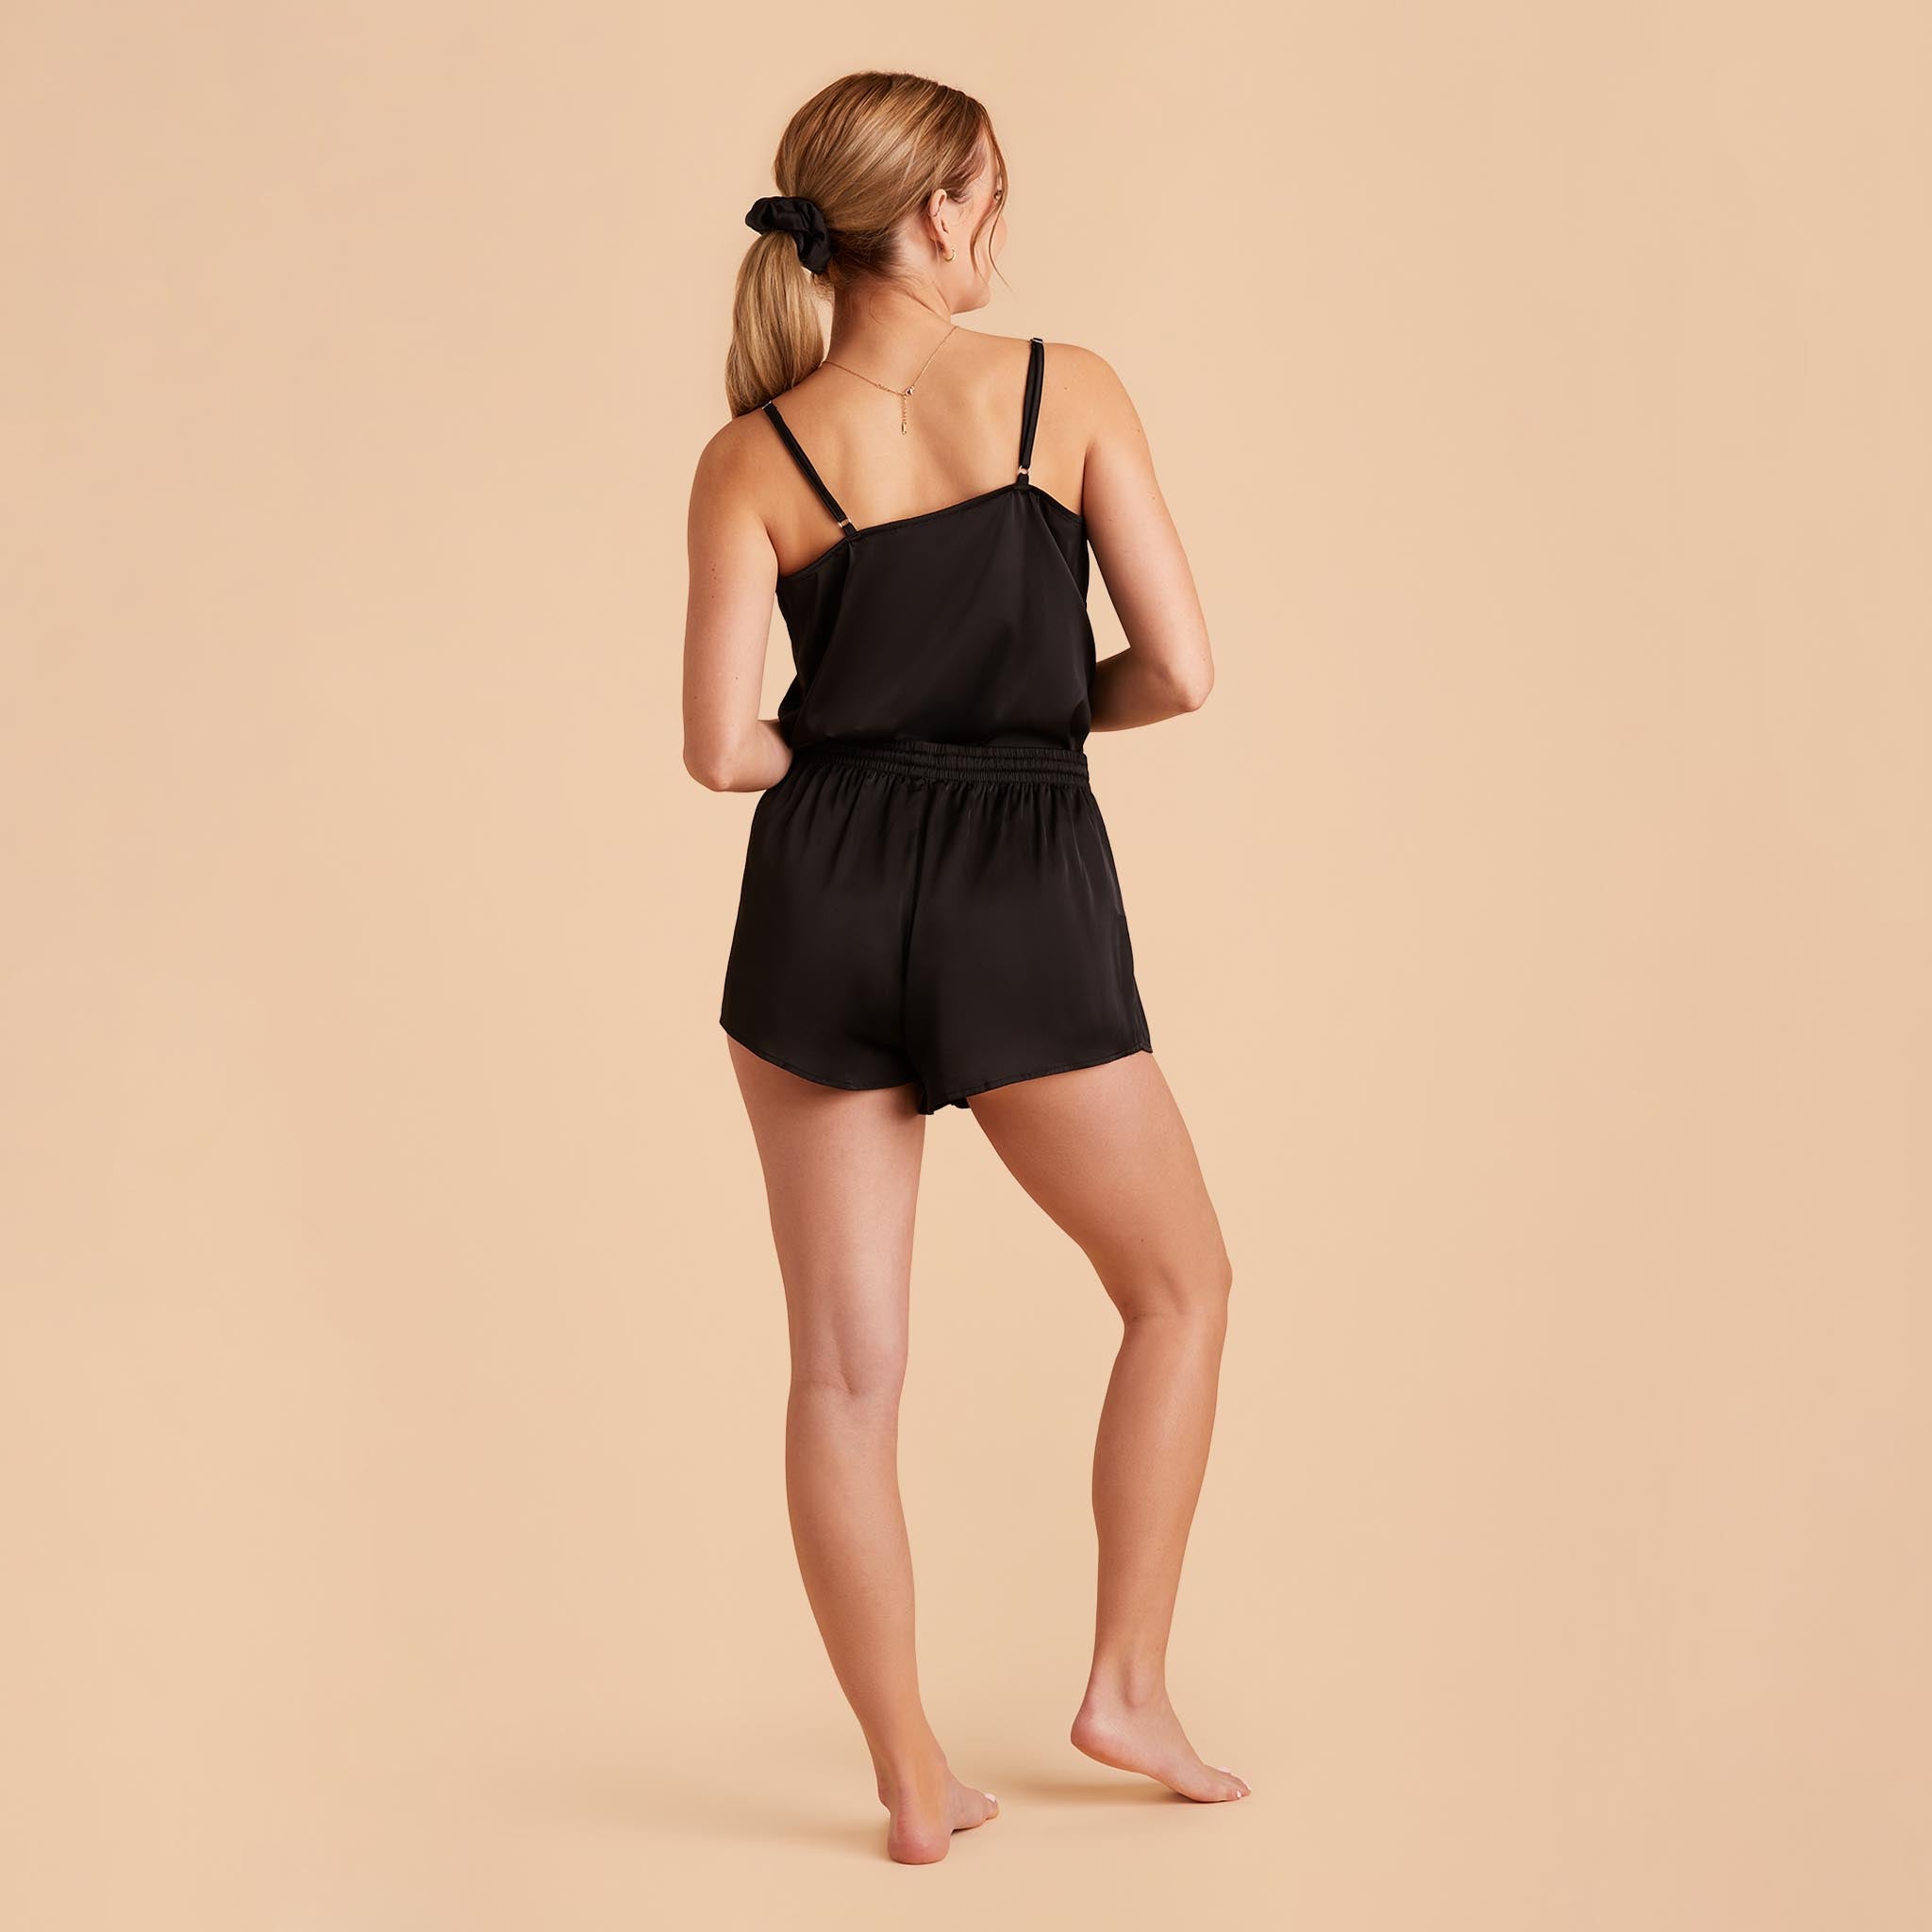 Olivia PJ Shorts in black back view